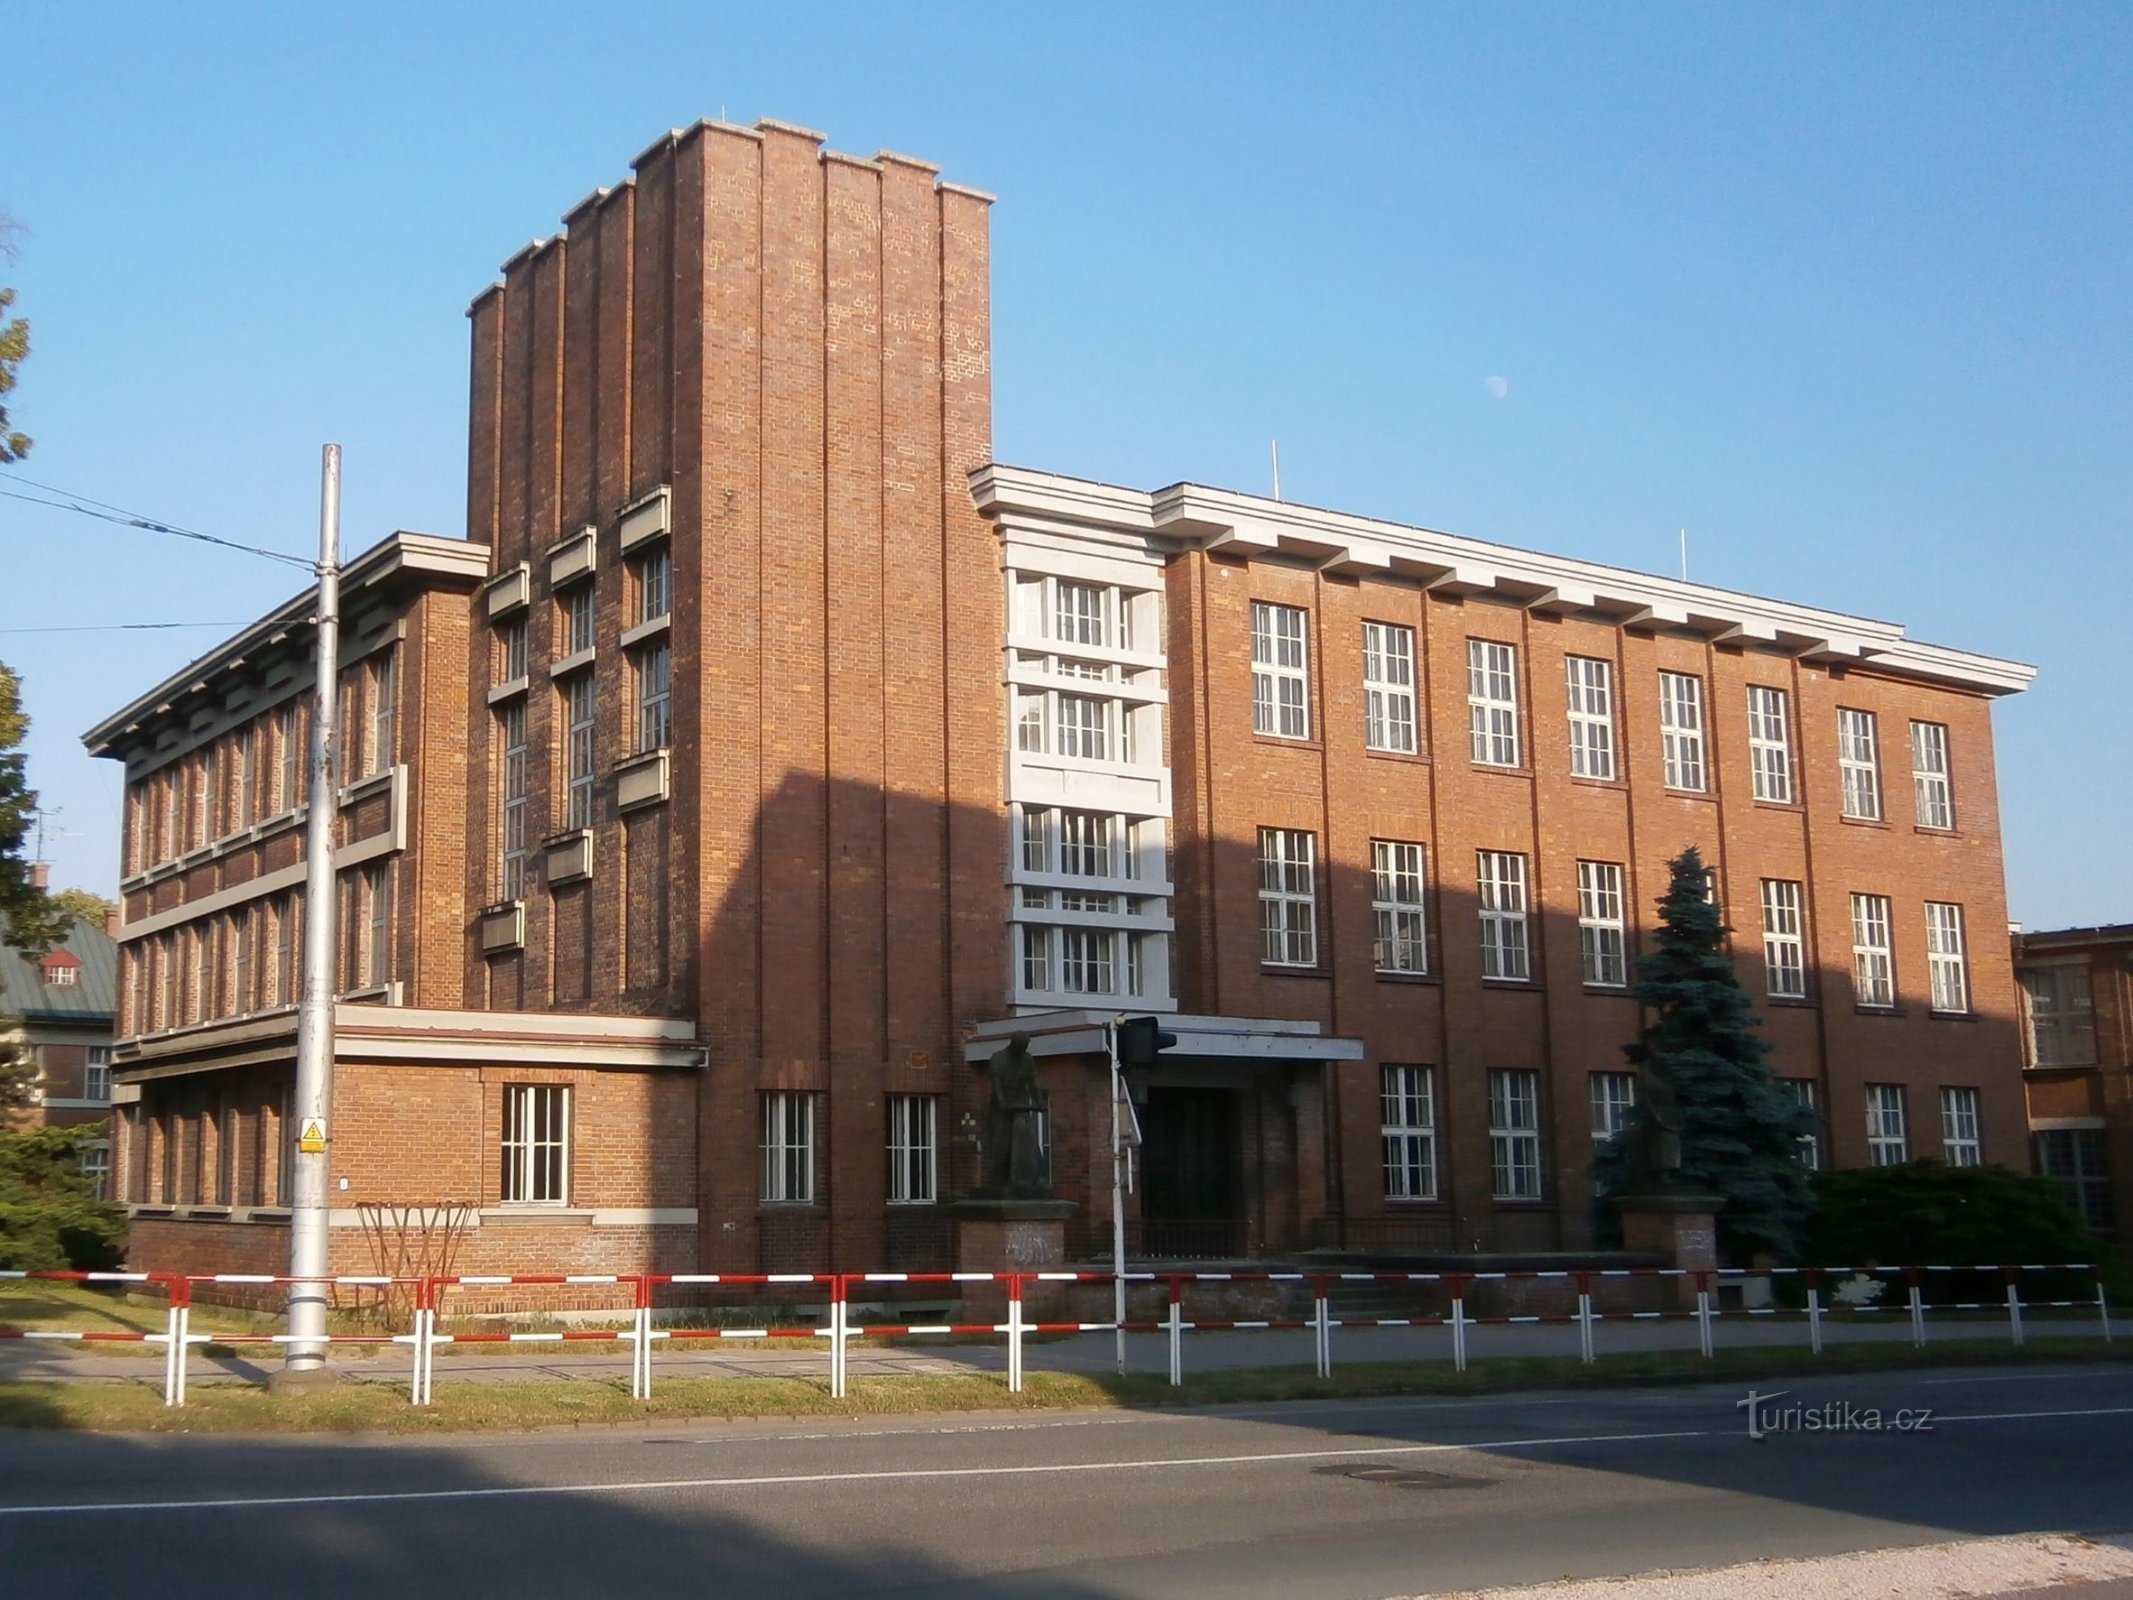 Ancienne école de tannerie (Hradec Králové, 19.6.2013)